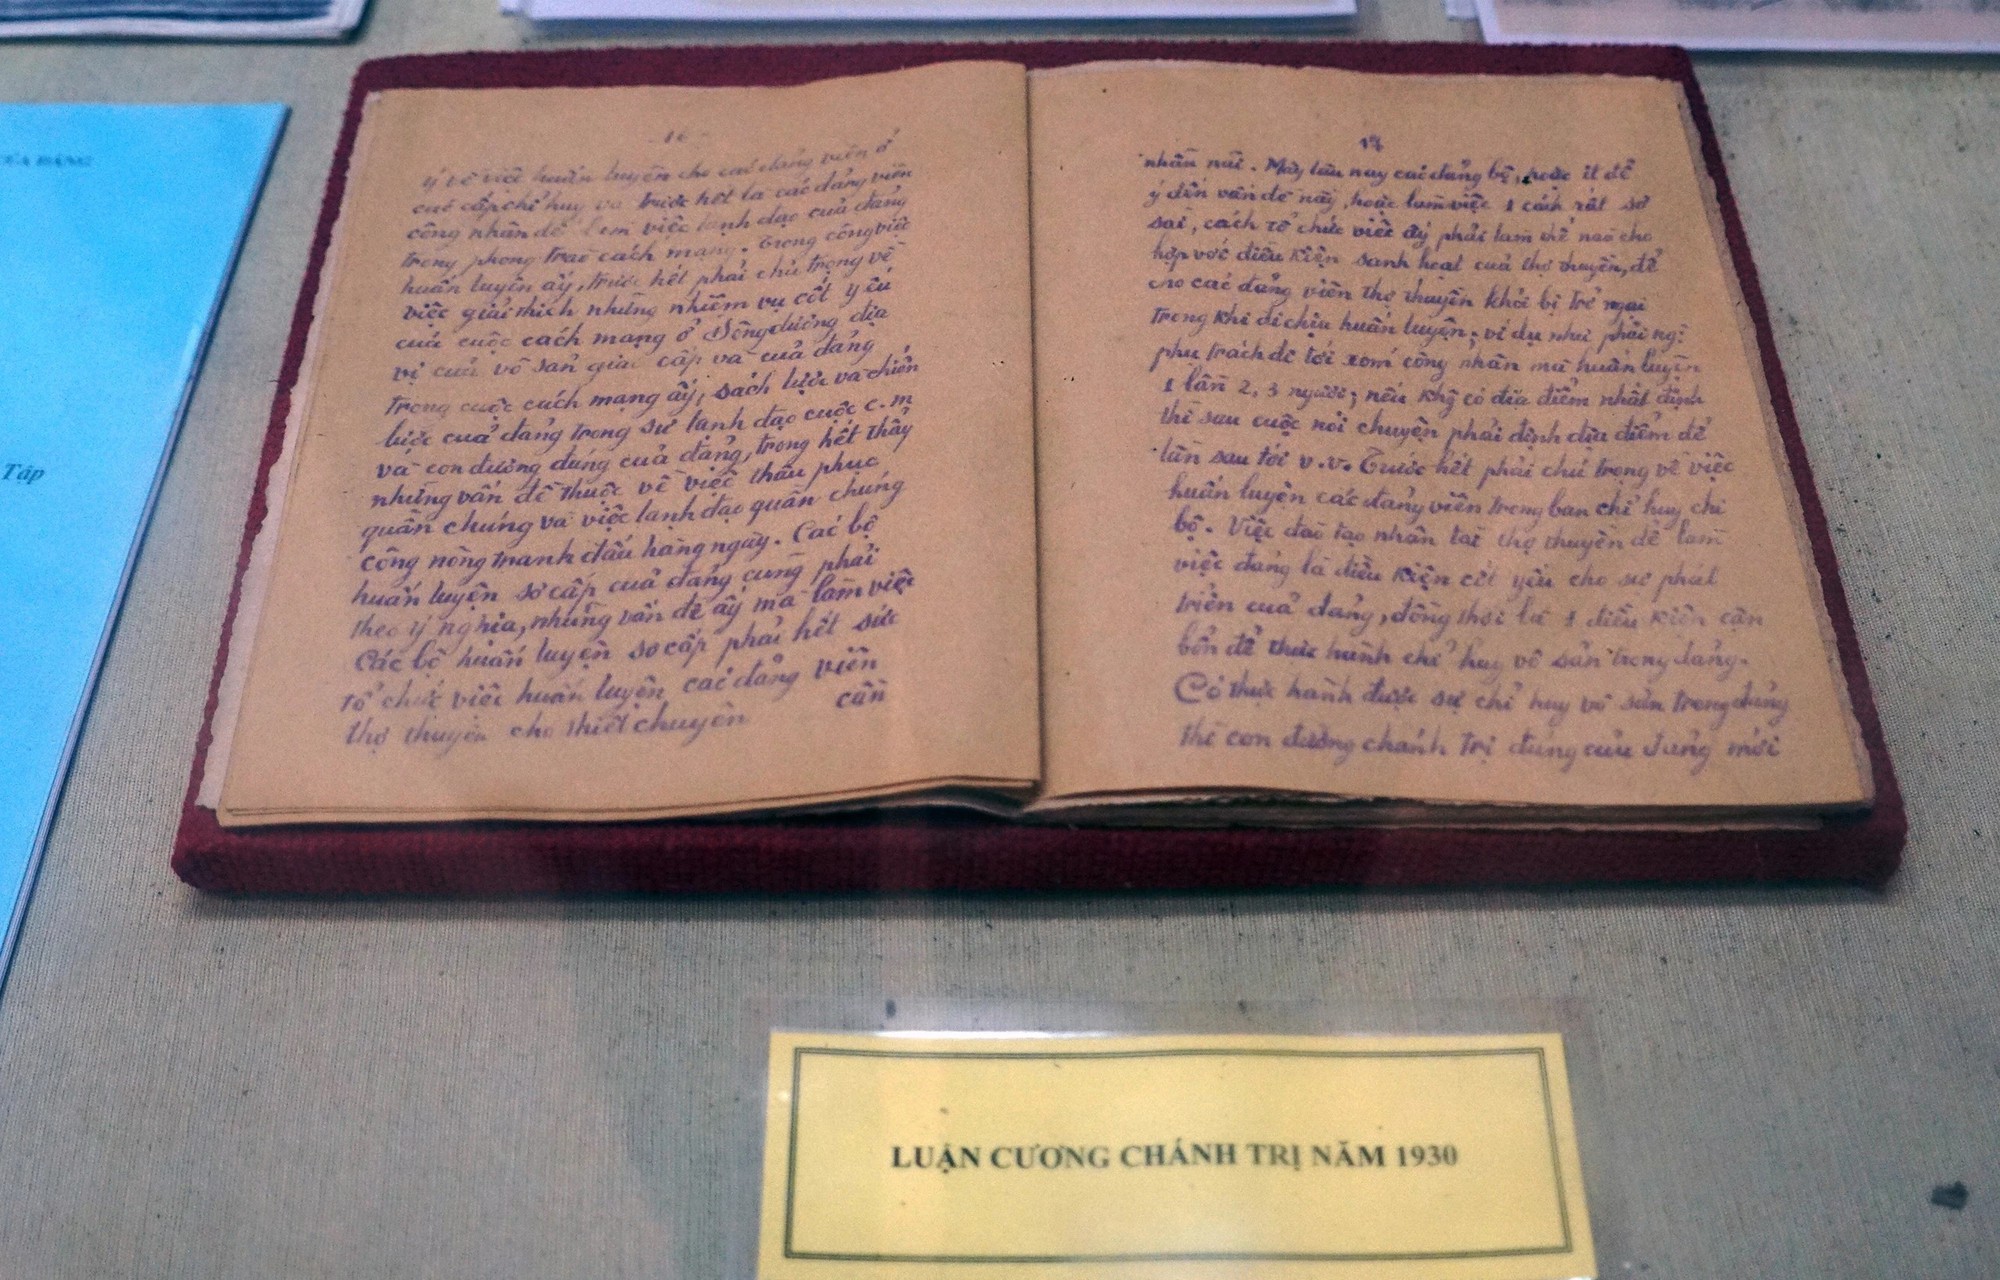 Tài liệu về Luận cương chính trị do Tổng Bí thư Trần Phú dự thảo được trưng bày tại nhà lưu niệm ở xã Tùng Ảnh